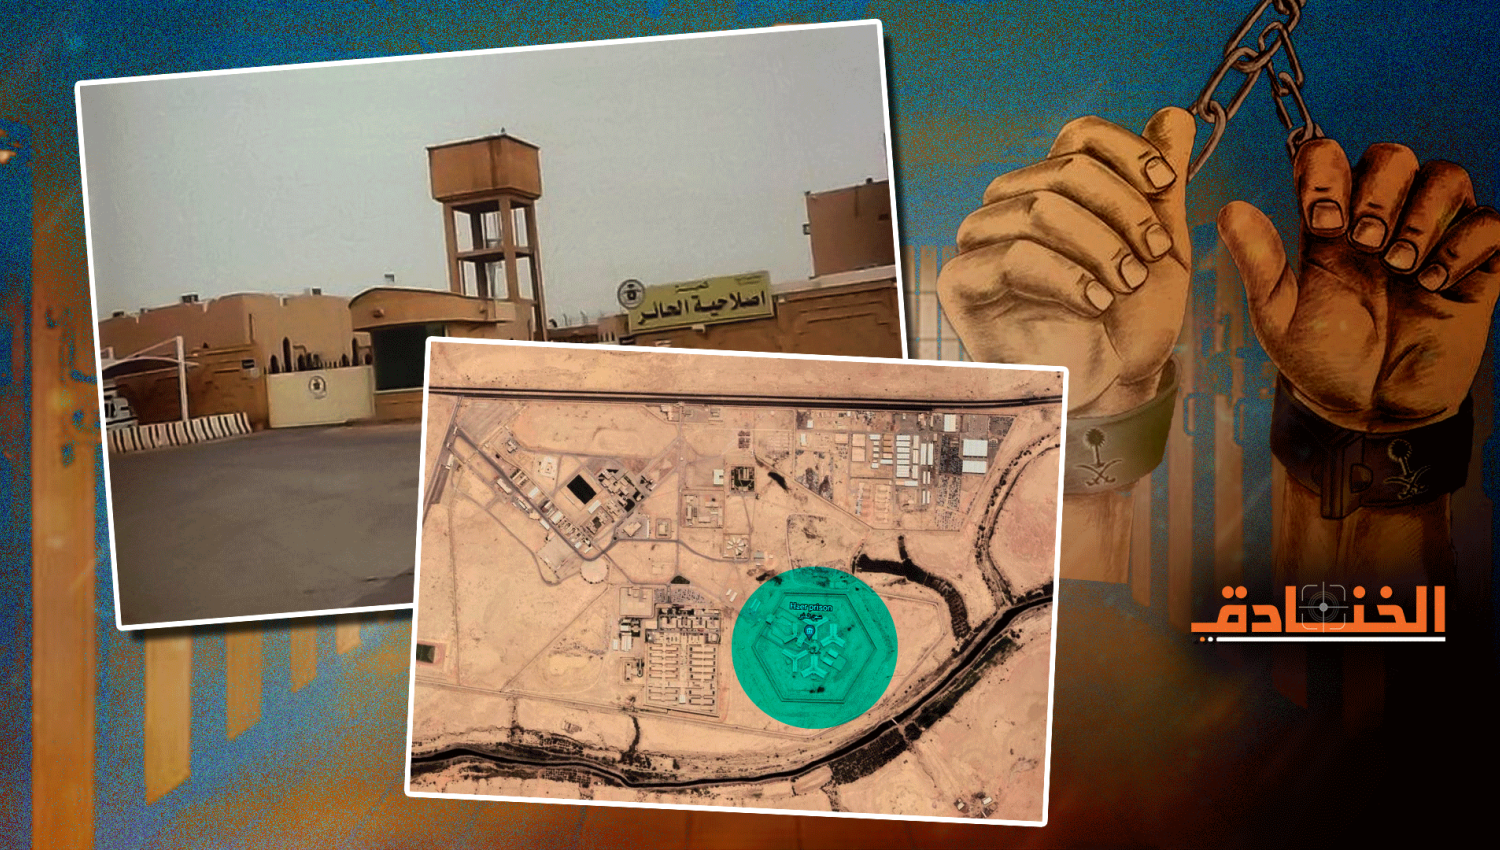 سجن الحائر: دعاية سعودية لـ "فندق الموت"! 